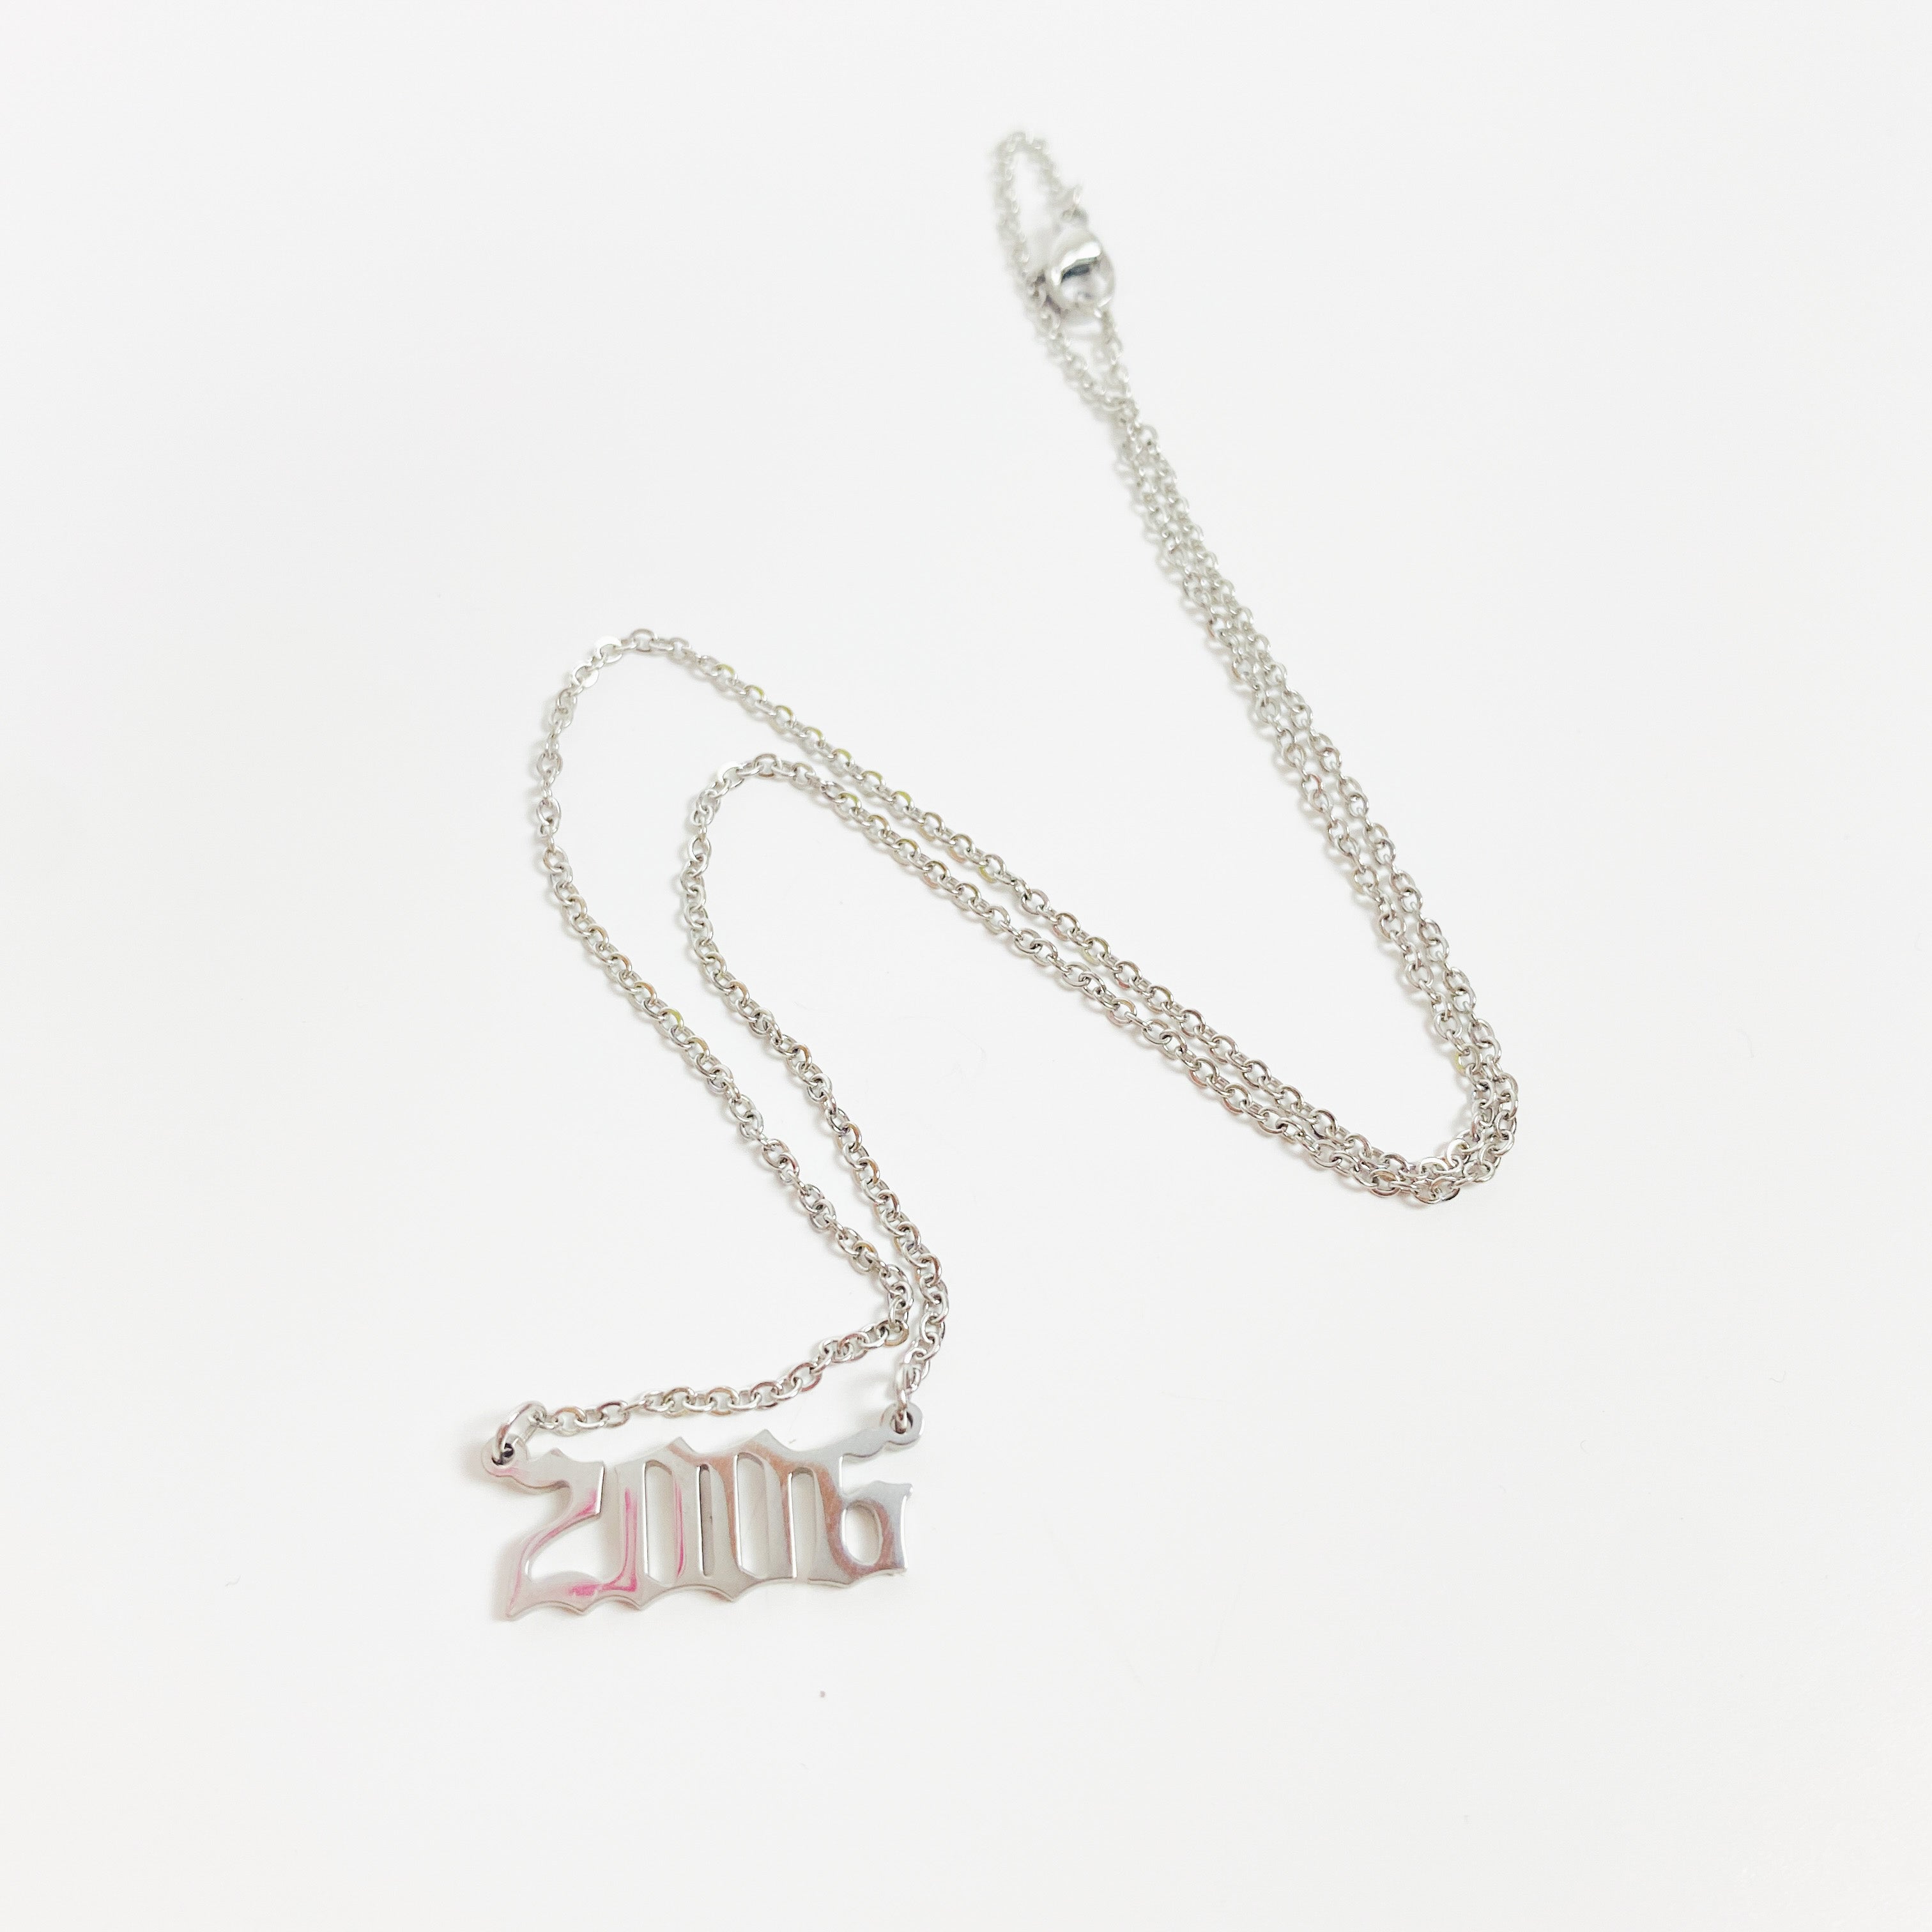 Retro 2006 Birth Year Necklace Chain Silver